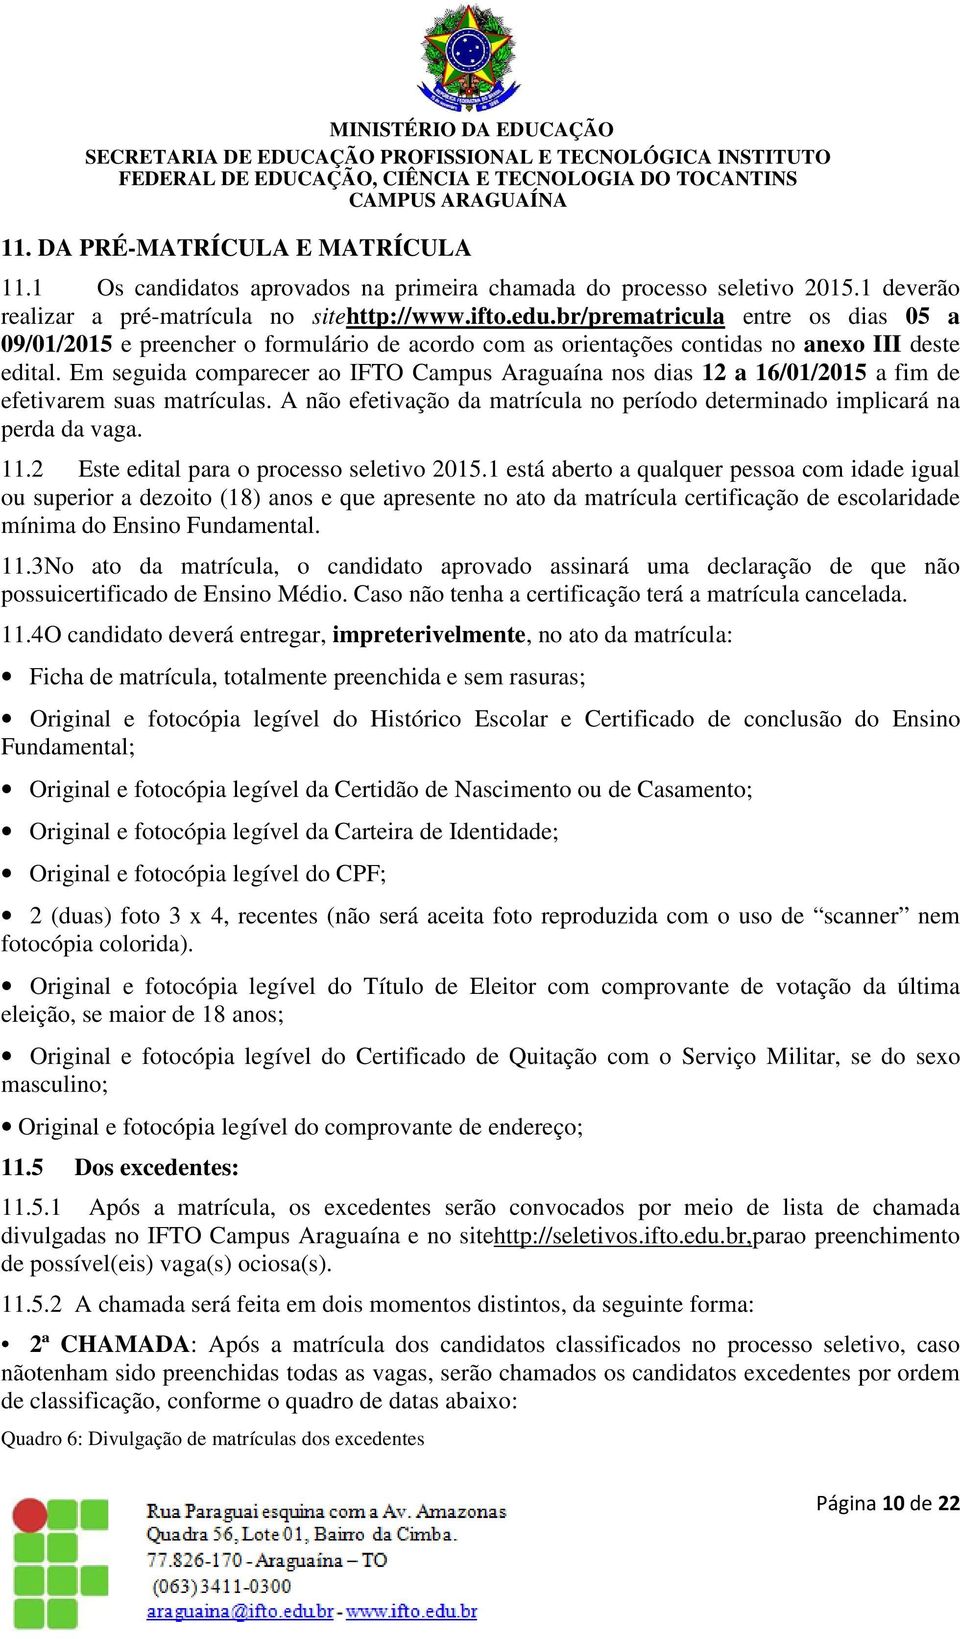 Em seguida comparecer ao IFTO Campus Araguaína nos dias 12 a 16/01/2015 a fim de efetivarem suas matrículas. A não efetivação da matrícula no período determinado implicará na perda da vaga. 11.